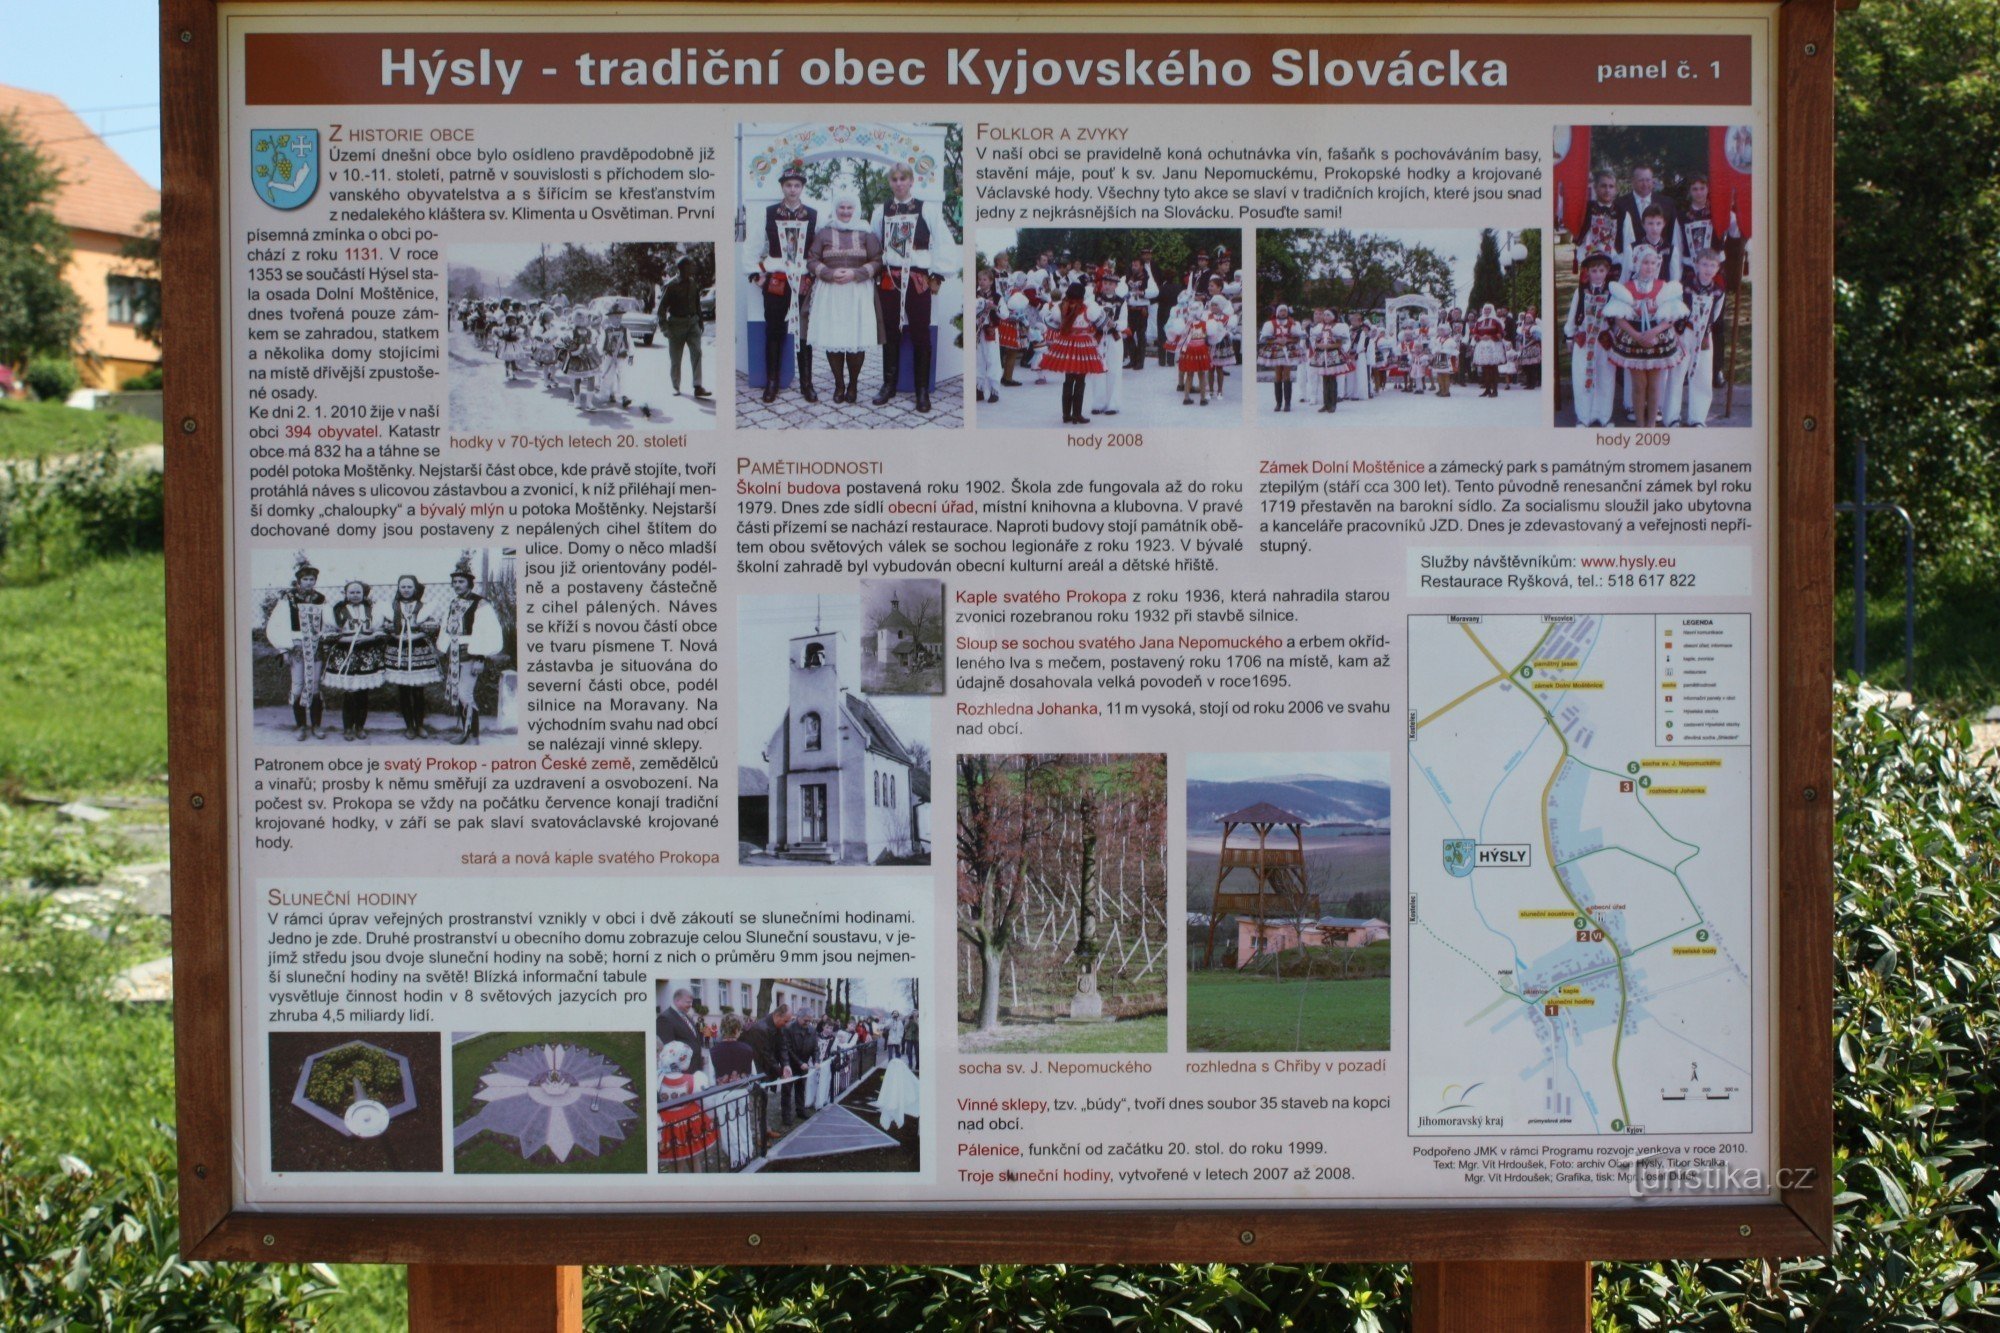 Hýsly, Slovácka turisztikailag érdekes faluja